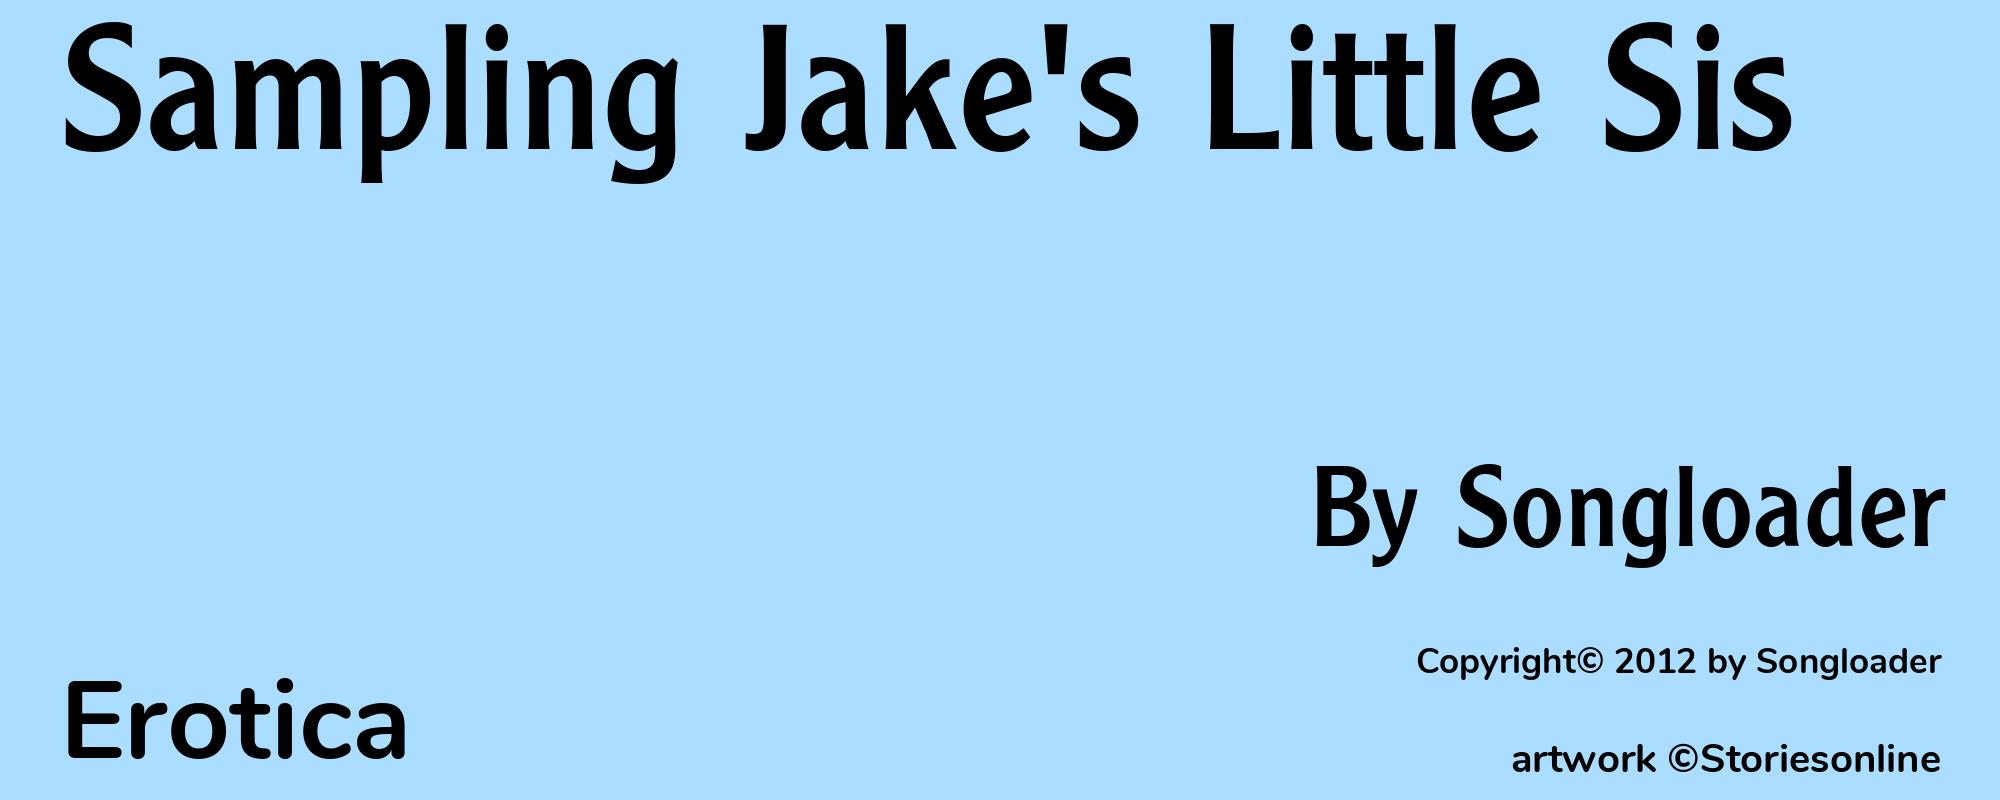 Sampling Jake's Little Sis - Cover